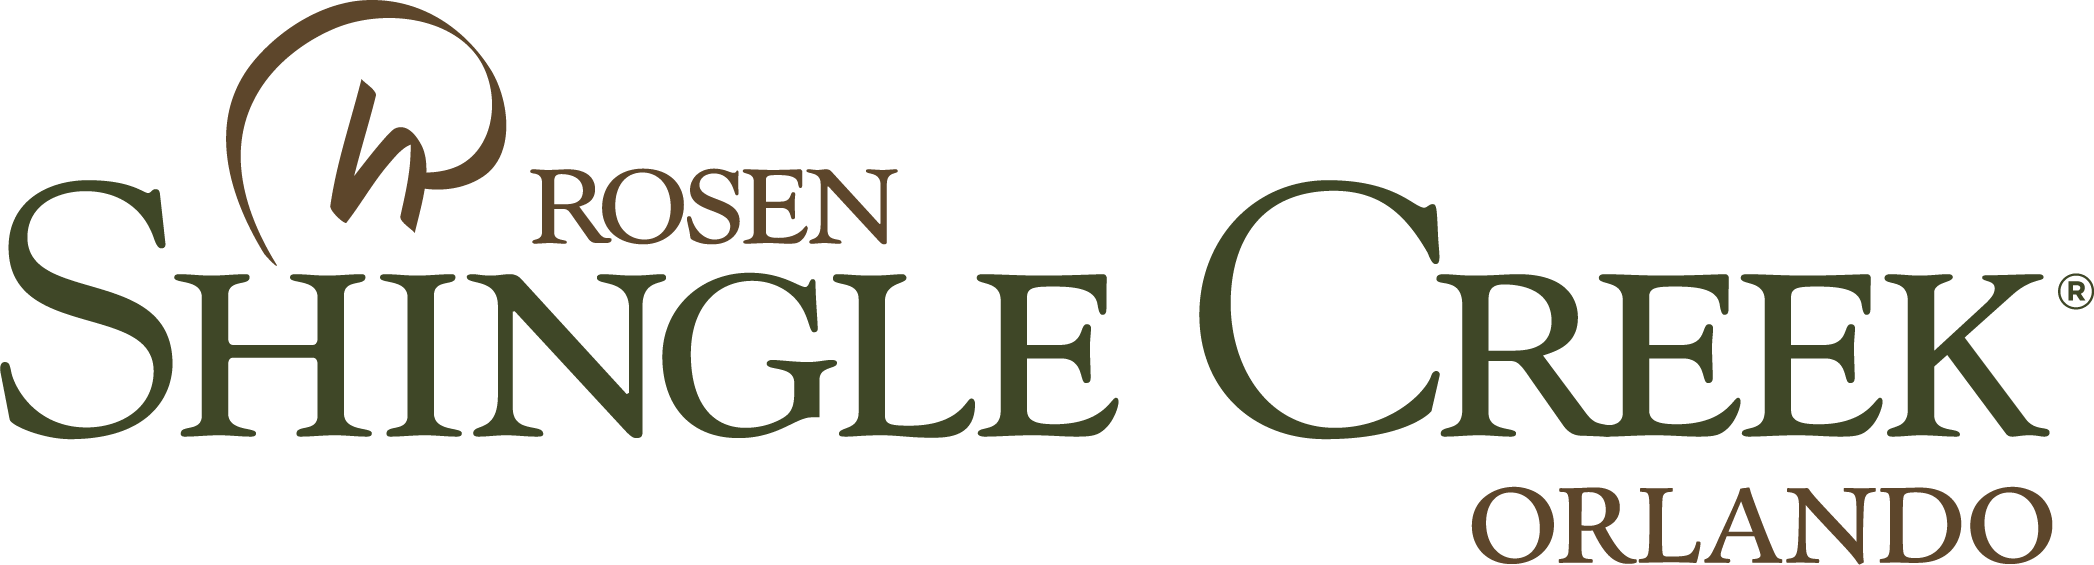 rosen shingle creek logo.png